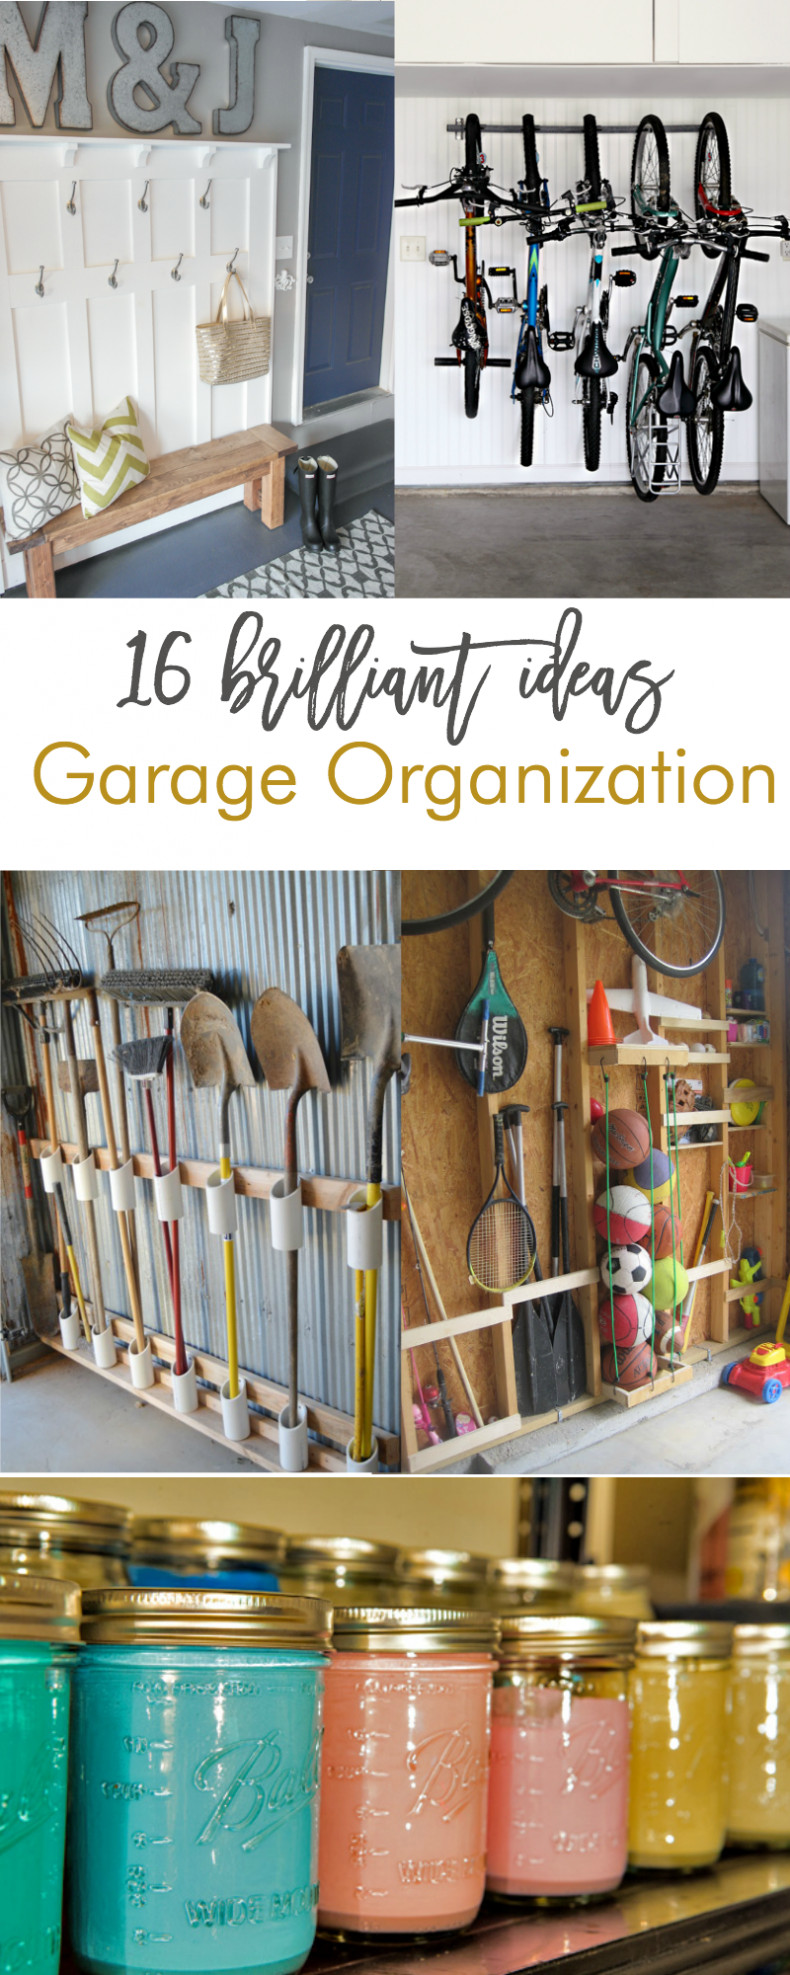 Diy Garage Organizer Ideas
 16 Brilliant DIY Garage Organization Ideas